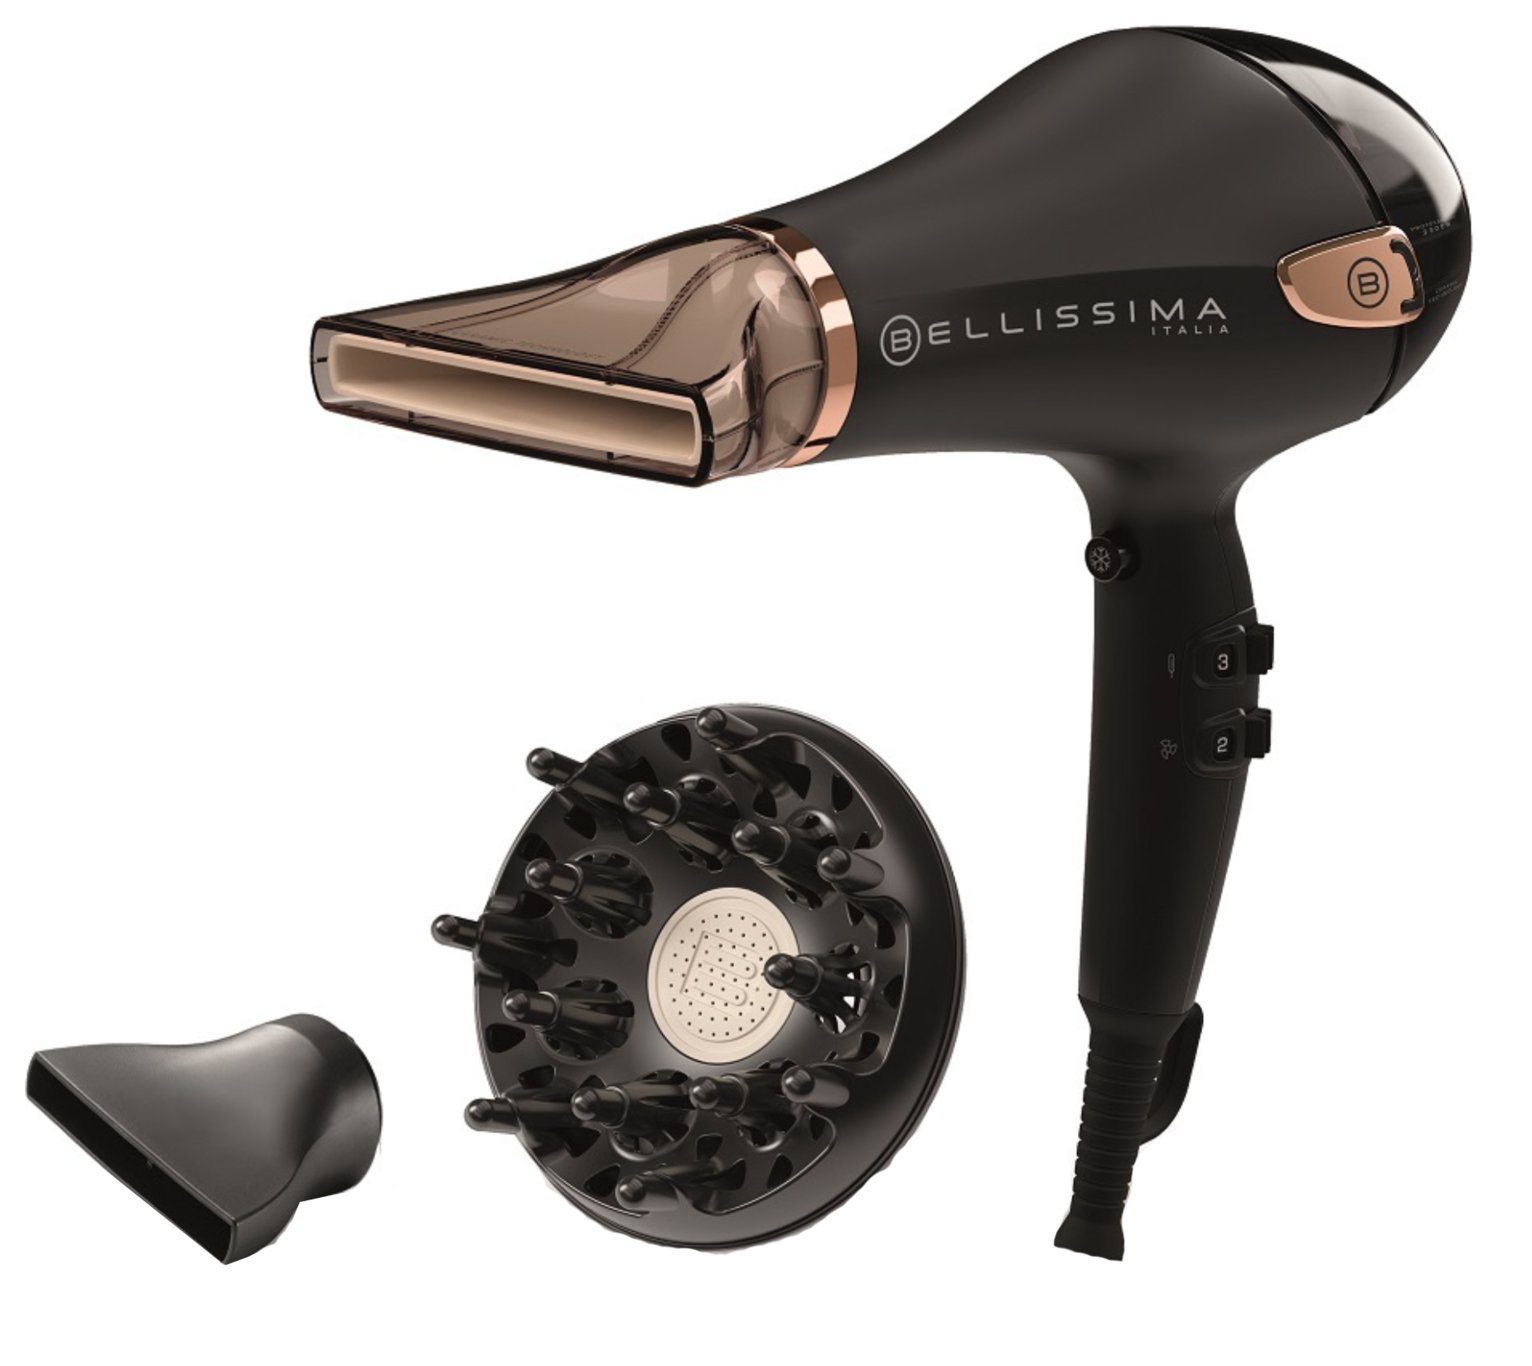 Bellissima Italia Premium Ceramic Hair Dryer with Diffuser